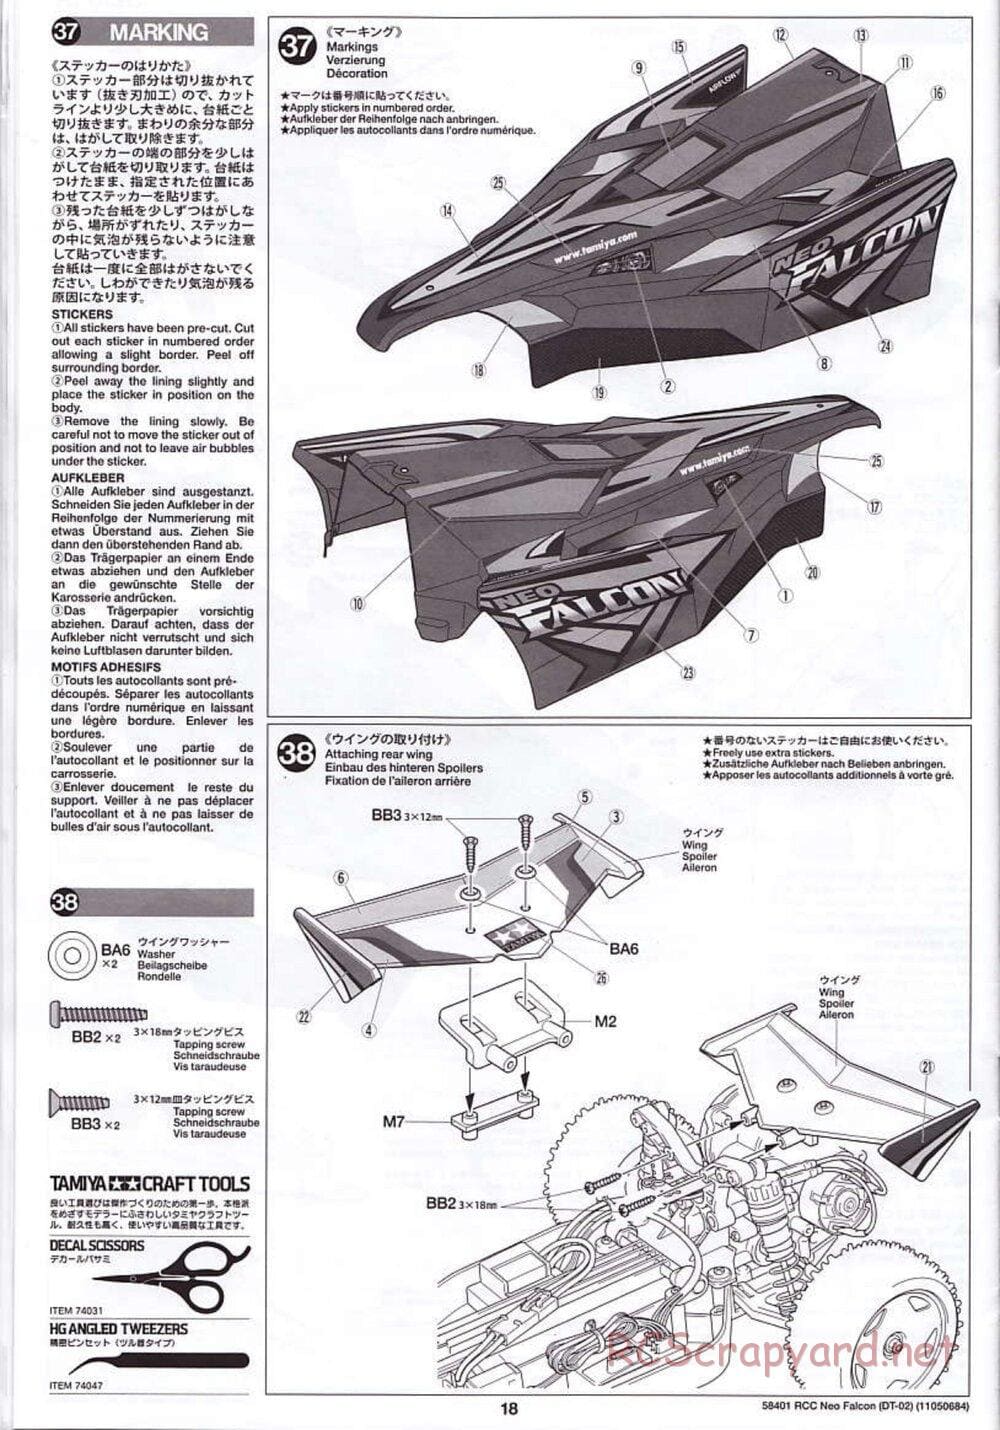 Tamiya - Neo Falcon Chassis - Manual - Page 18